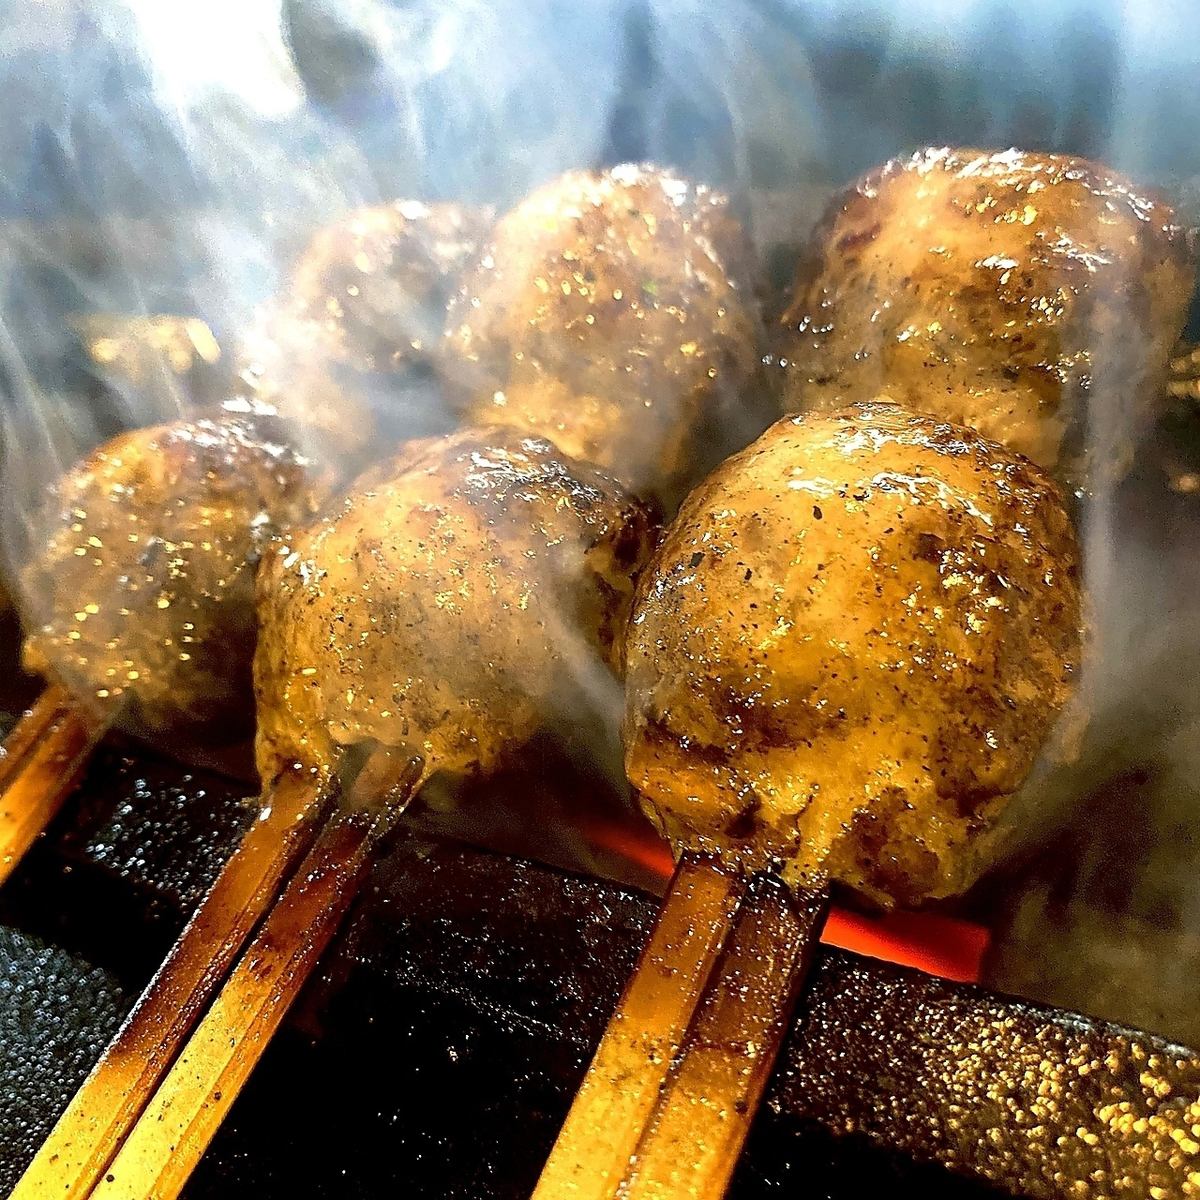 At Yakitori Ono, we carefully select the freshest free-range chicken.